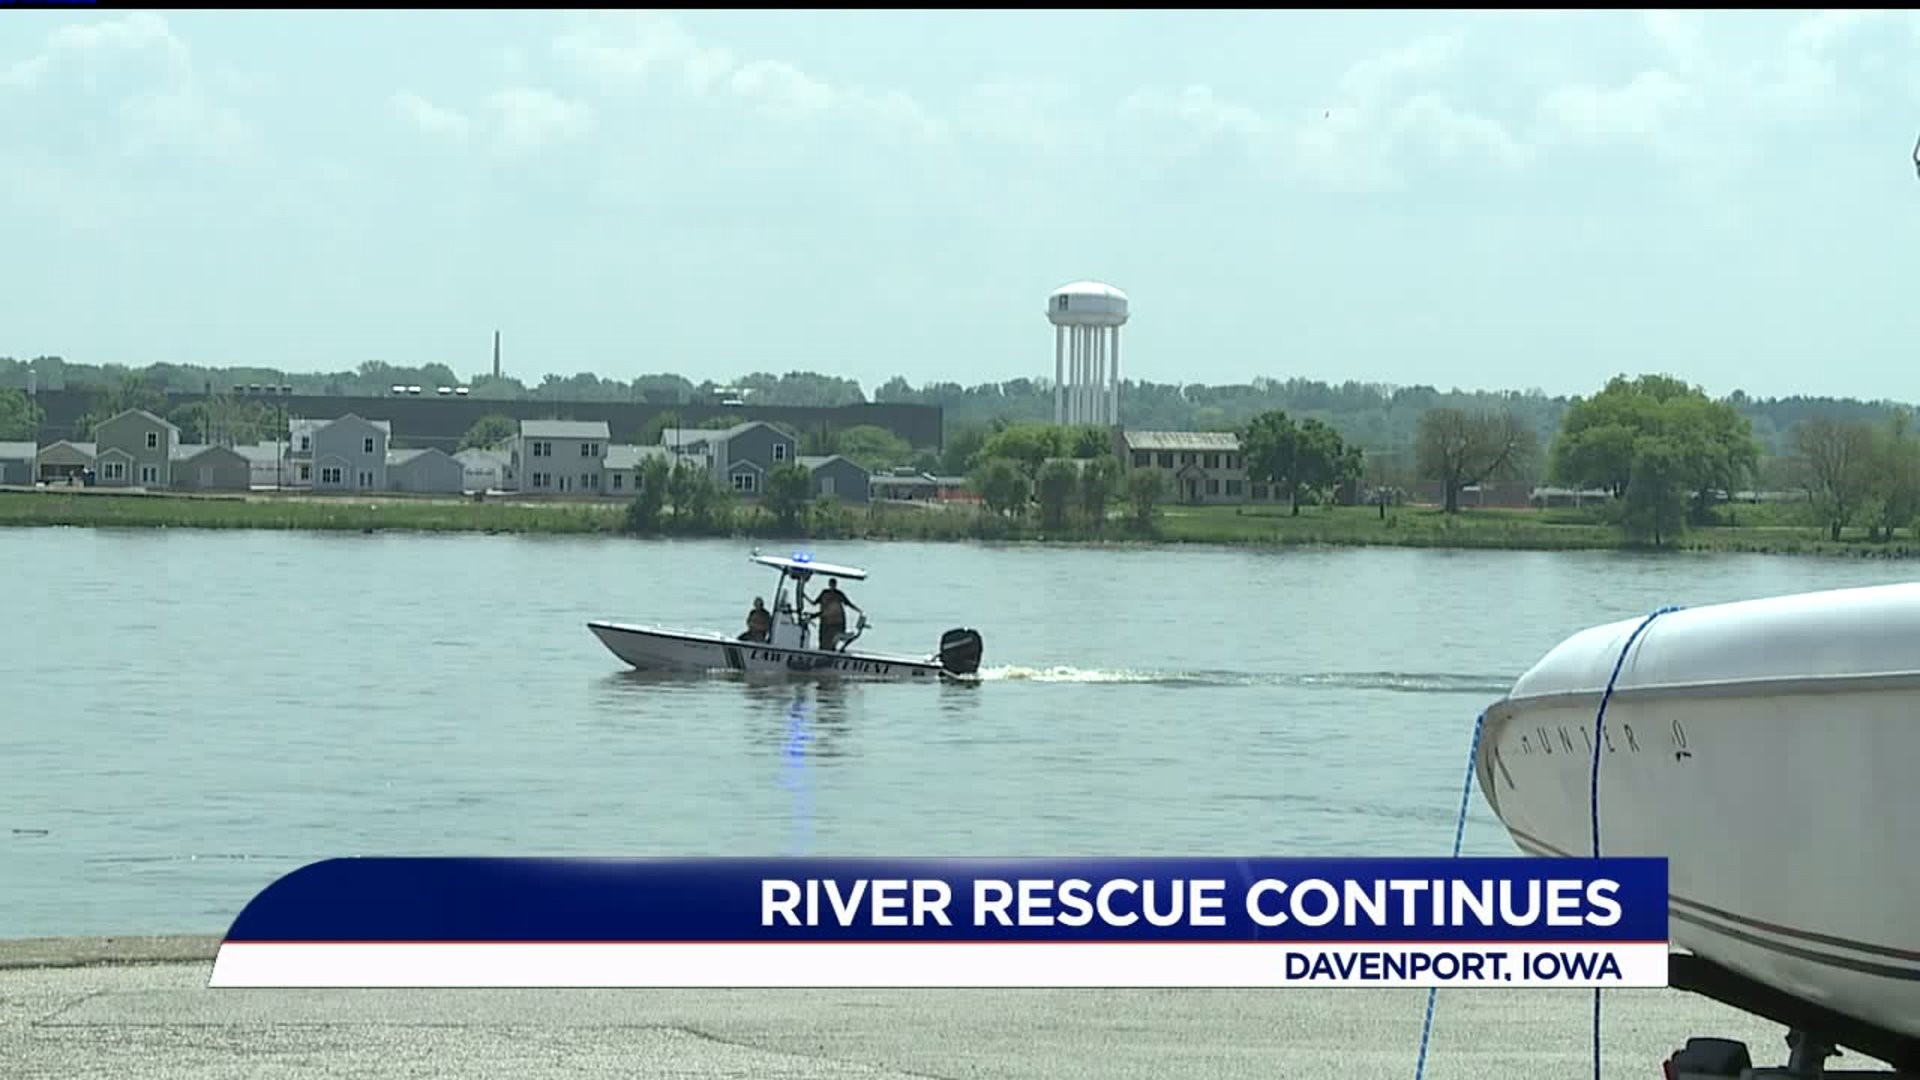 River rescue